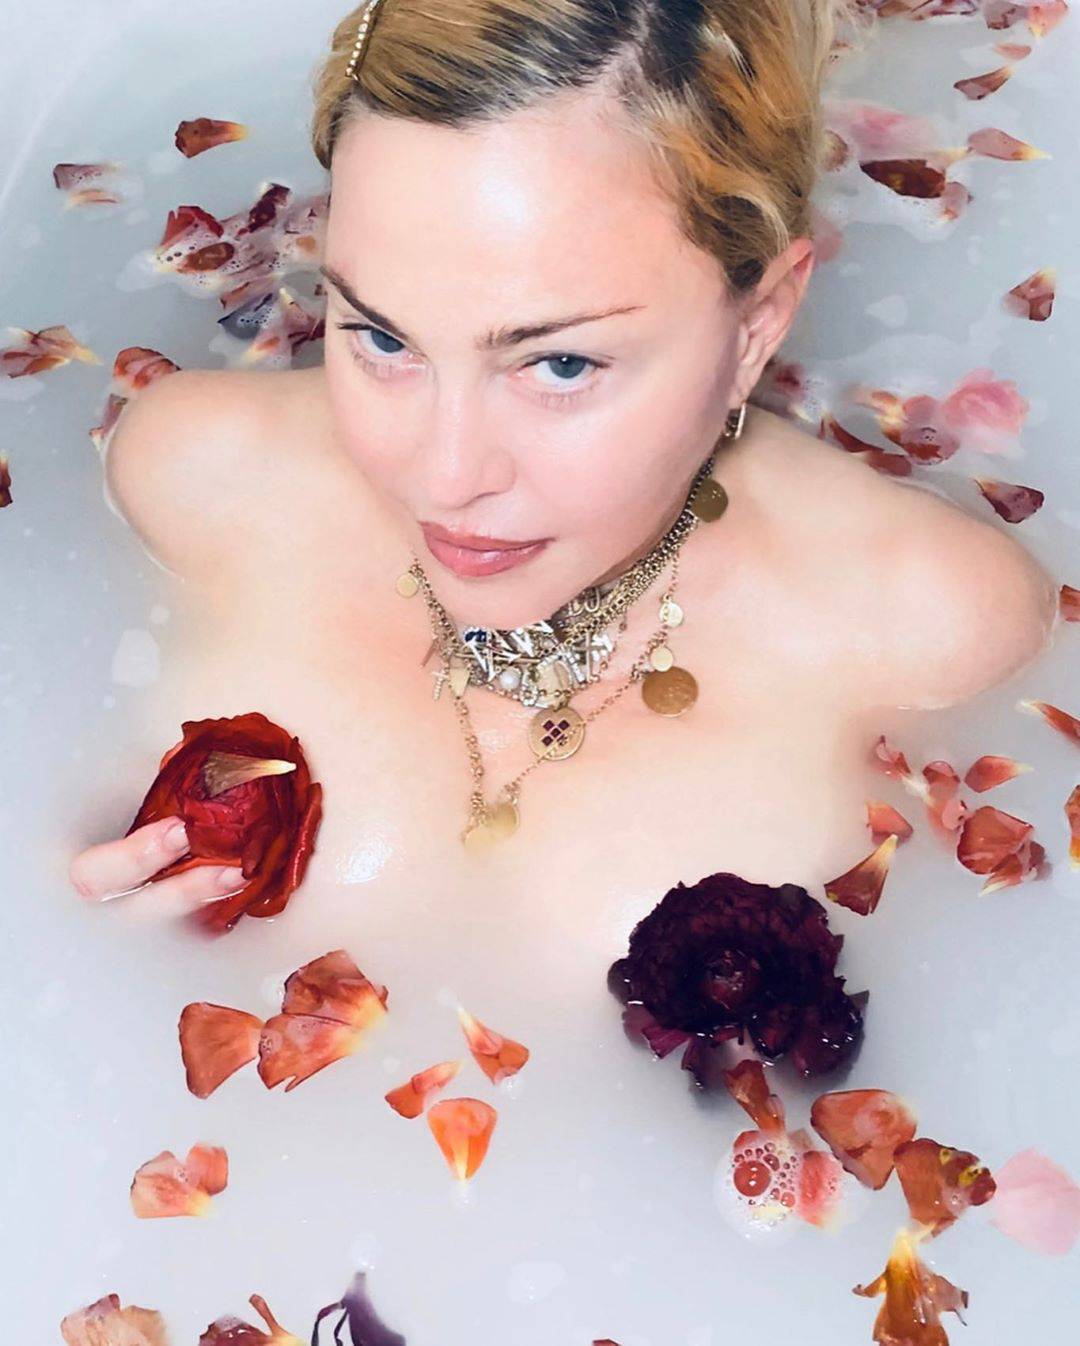 I Madonna leži doma: Kupa se u laticama i zapisuje intimnosti